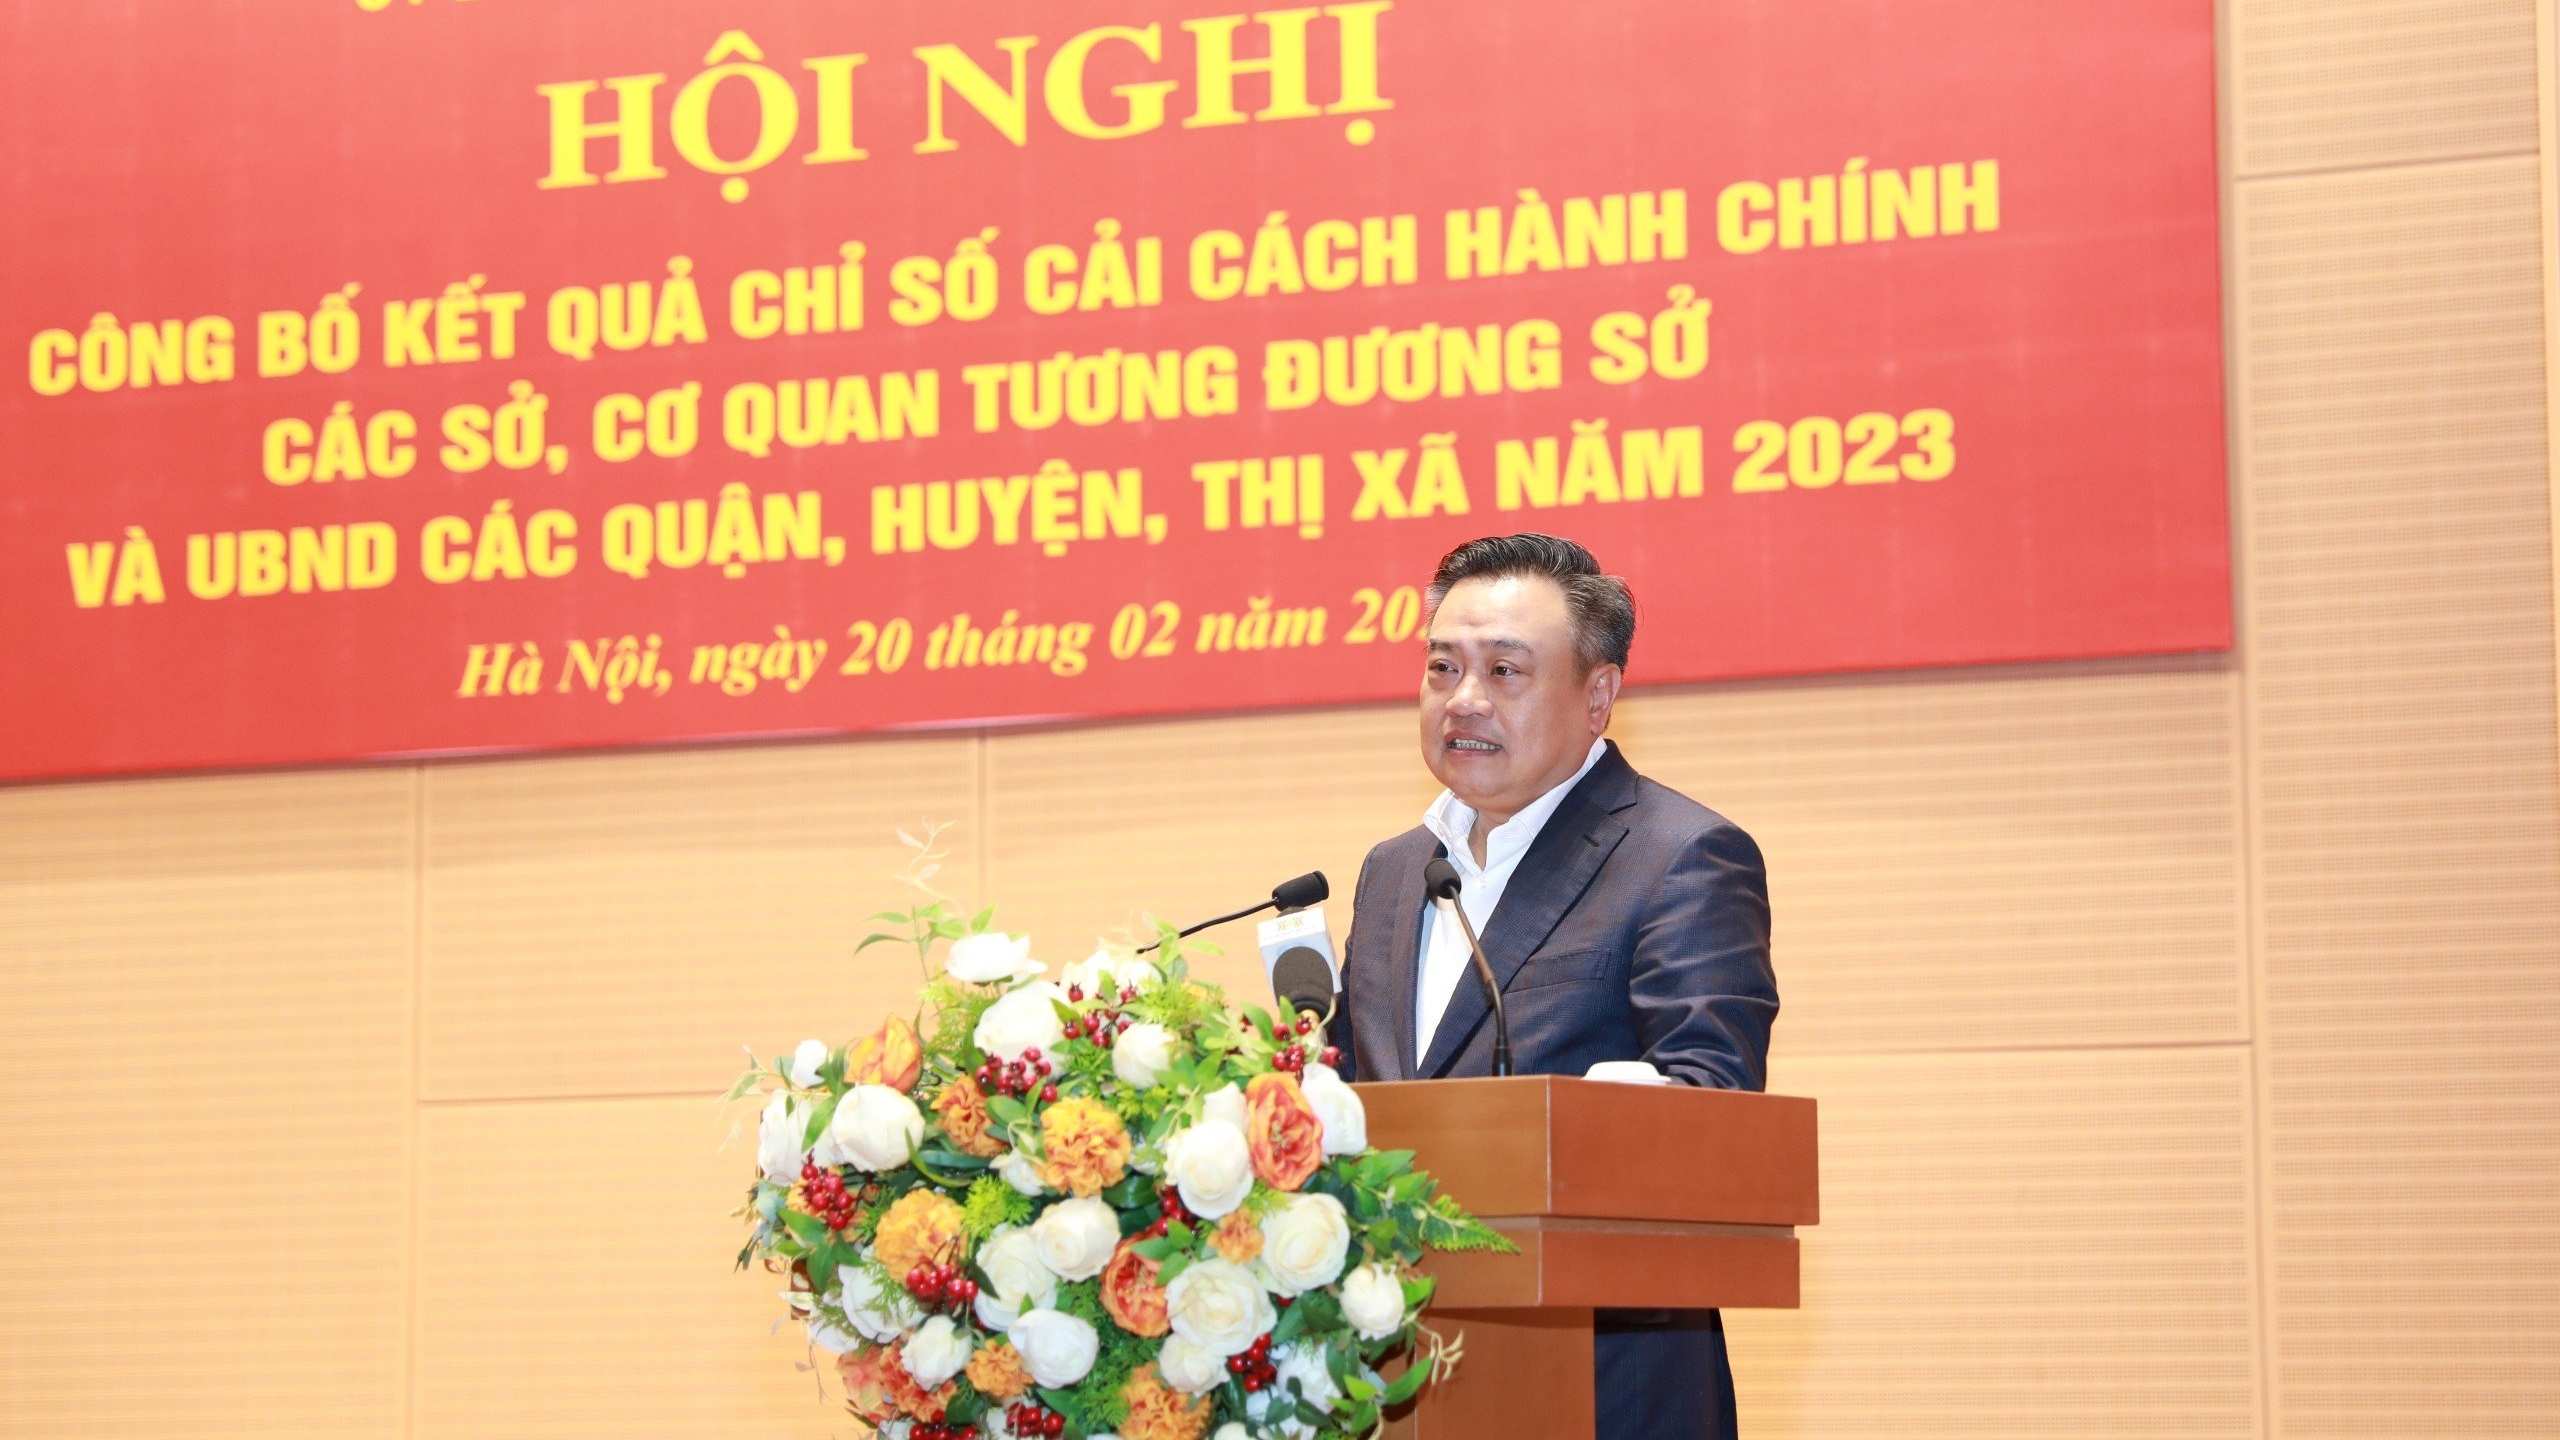 Hà Nội: Sở Nội vụ, quận Đống Đa đạt chỉ số Cải cách hành chính năm 2023 cao nhất